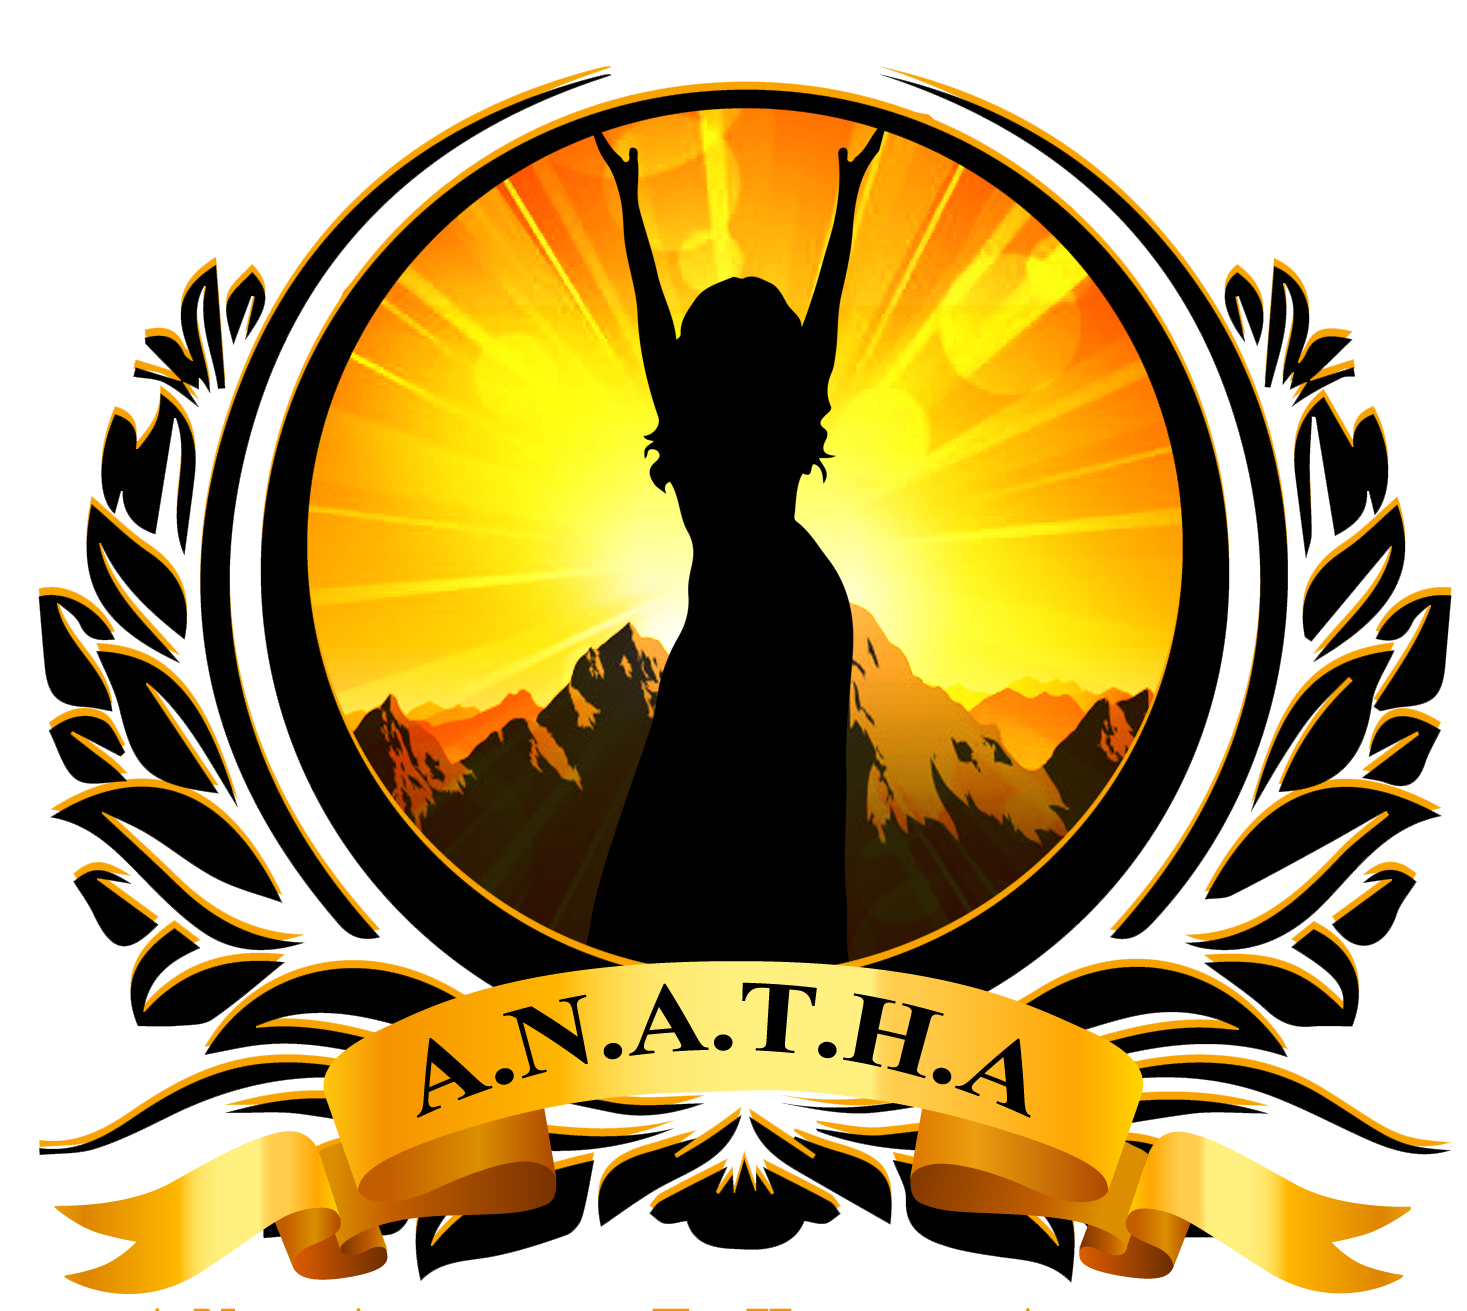 Anathausvi